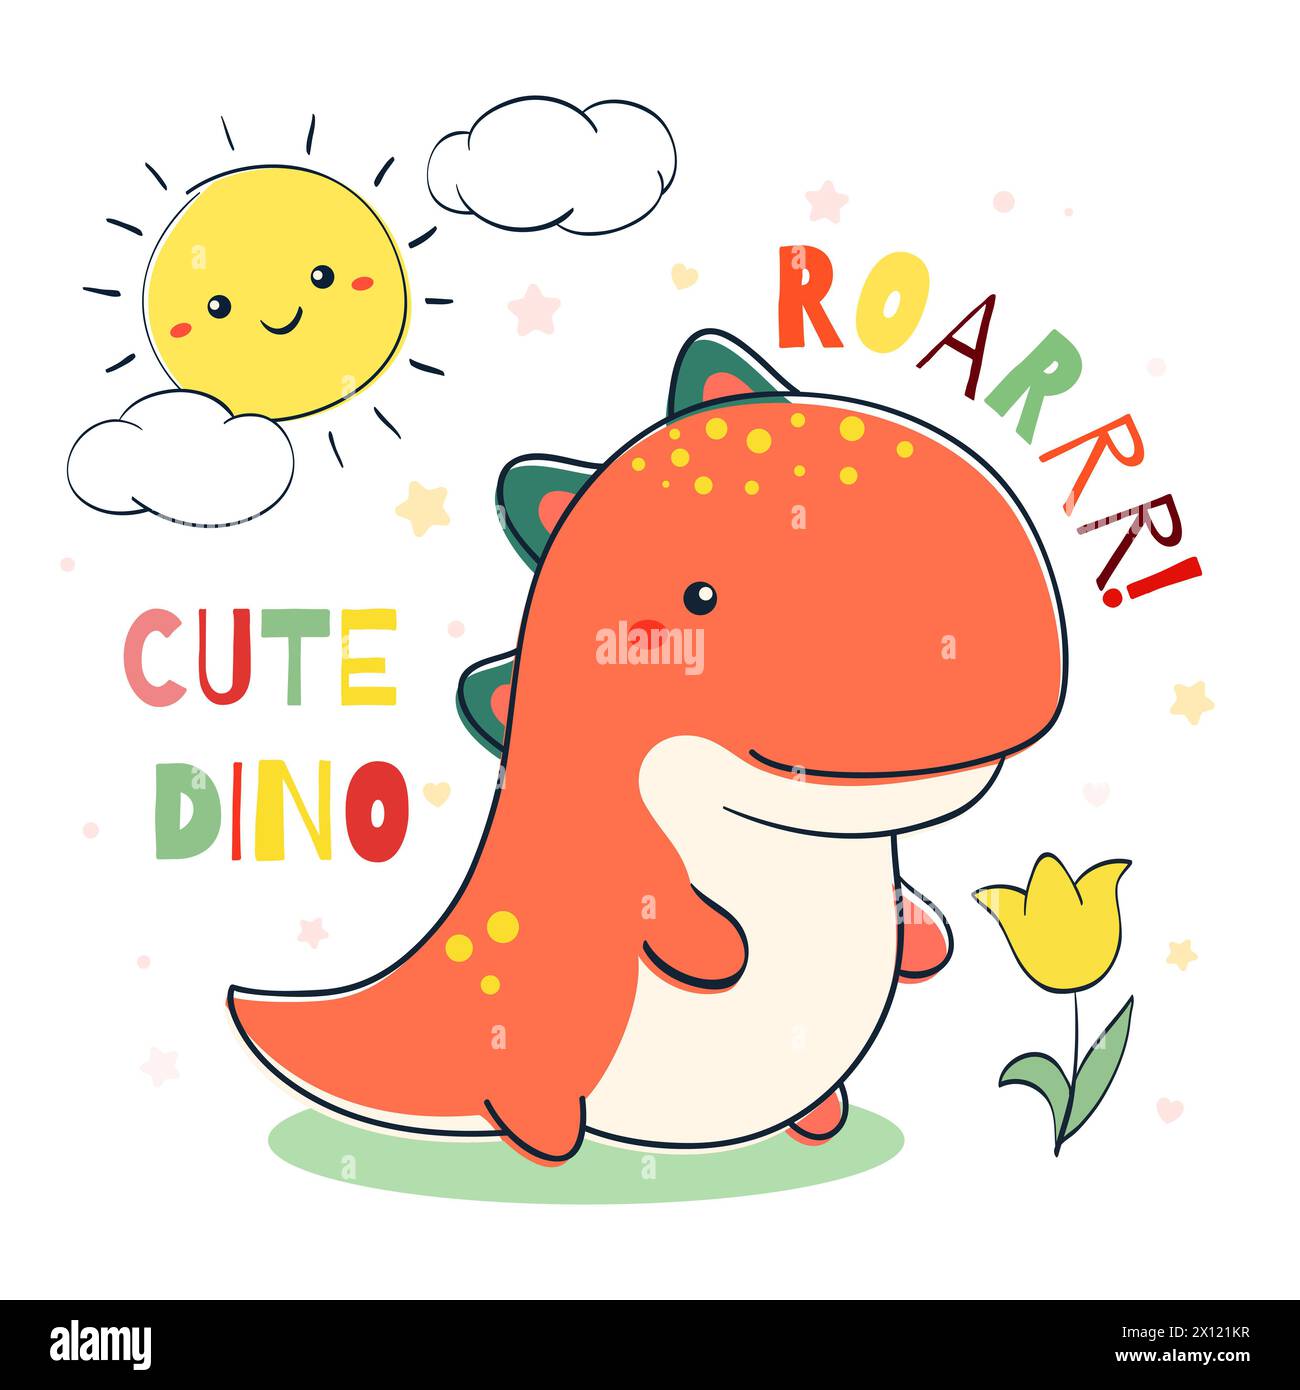 Illustration de style Doodle avec Dino mignon, nuage, soleil et fleur. Croquis dans le style dessiné à la main avec dinosaure de dessin animé souriant. Peut être utilisé pour la chambre d'enfants p Banque D'Images